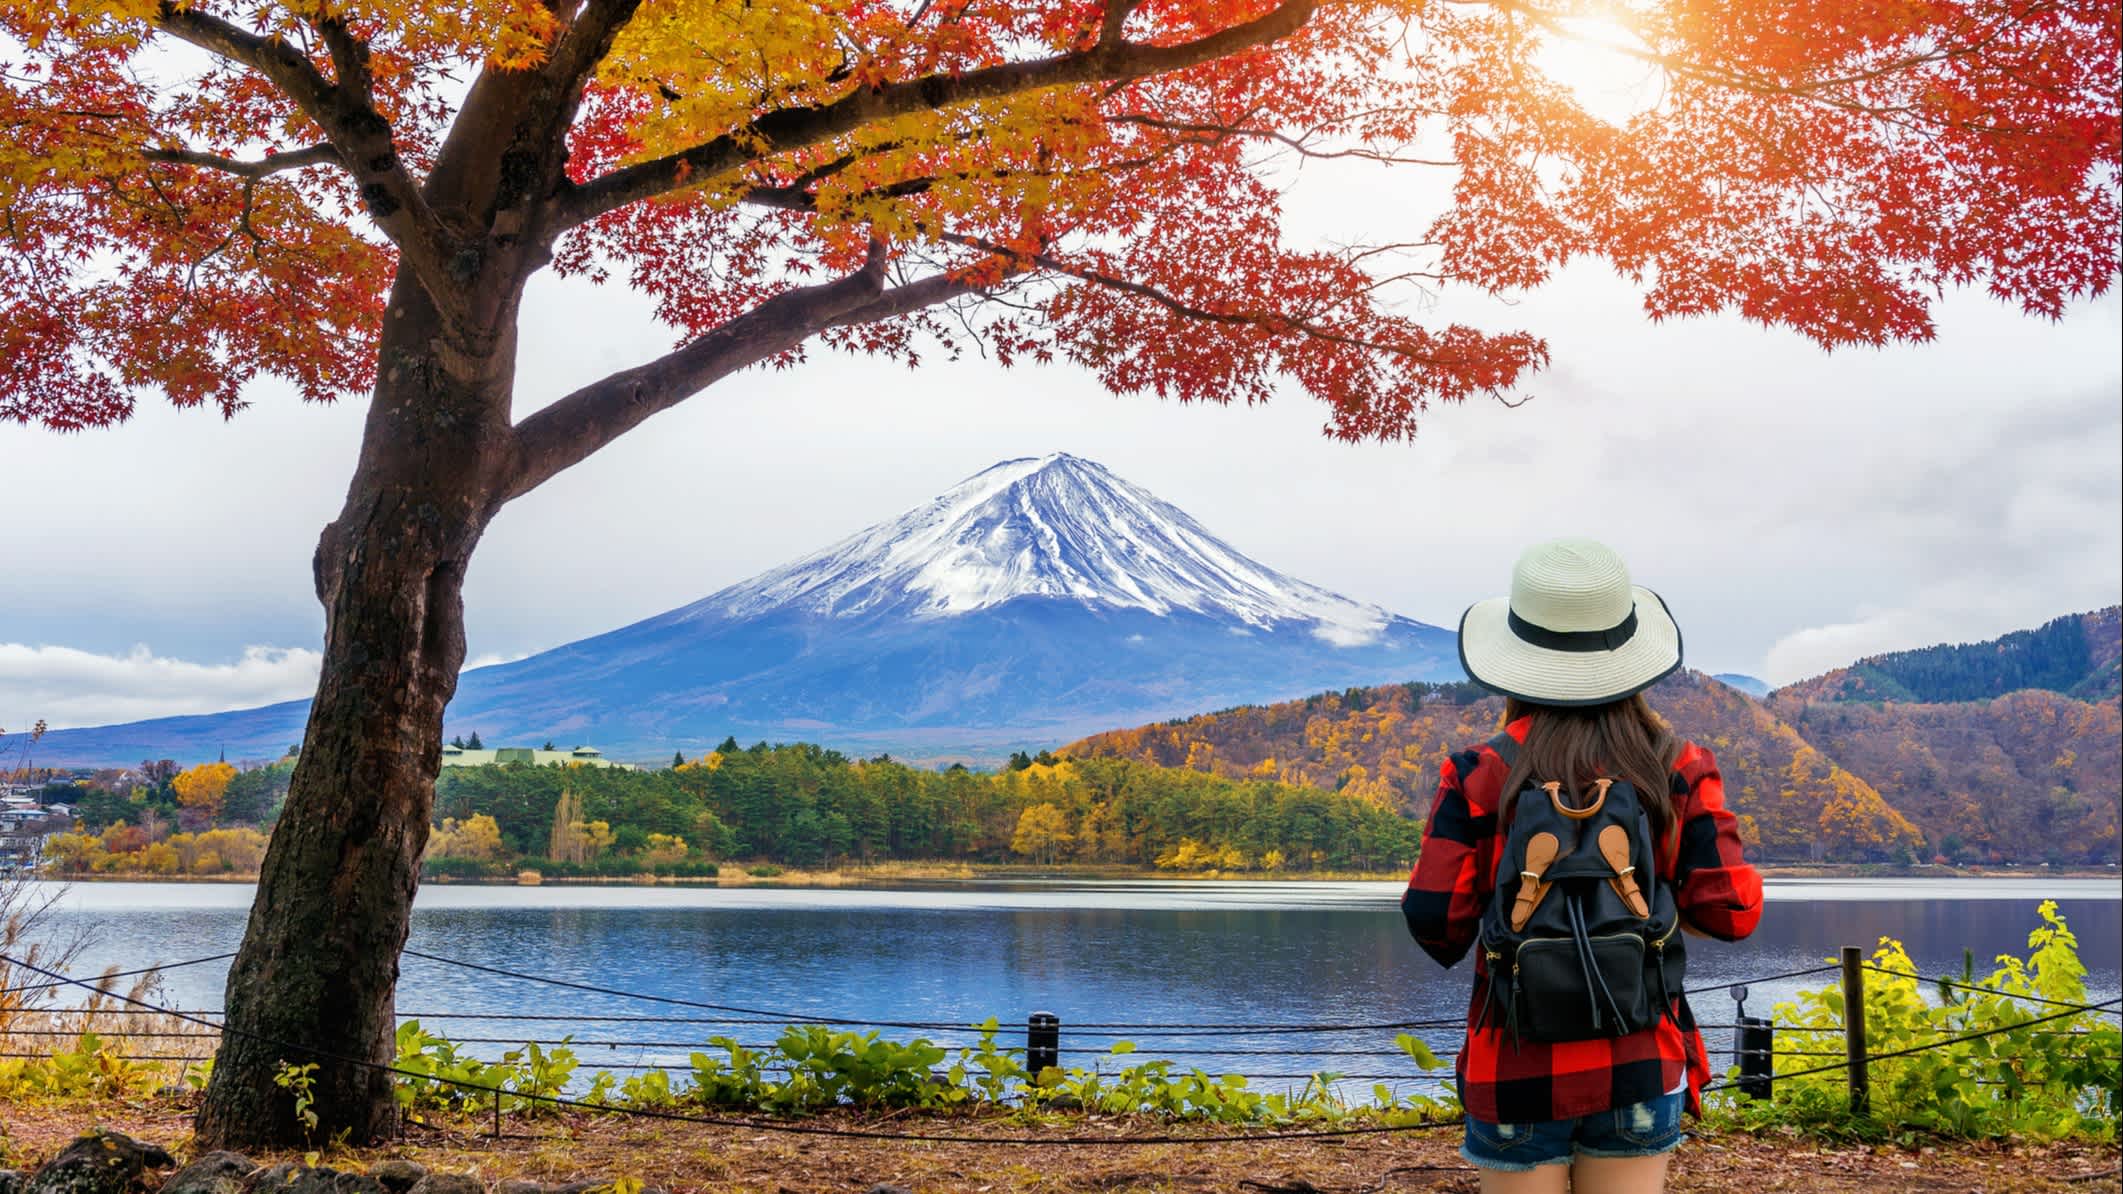 Touristin mit Rucksack vor dem Fuji Berge im Herbst, Japan.

